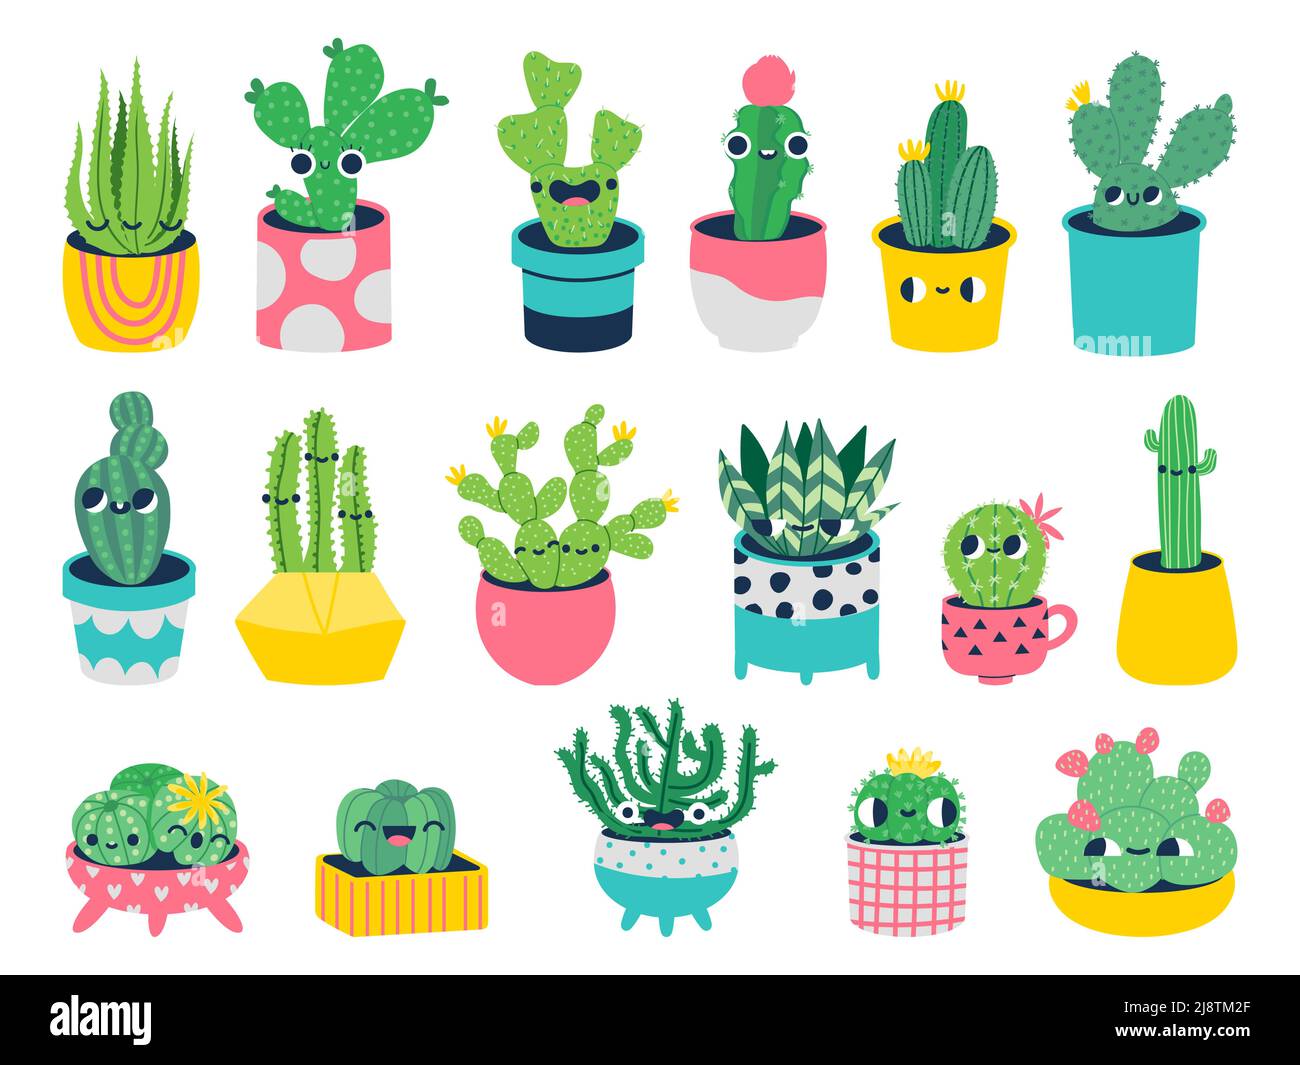 Cactus avec faces. Personnages de dessins animés mignons dans des pots avec des visages drôles, smiley mascotte plantes pour enfants illustration. Ensemble de vecteurs Illustration de Vecteur